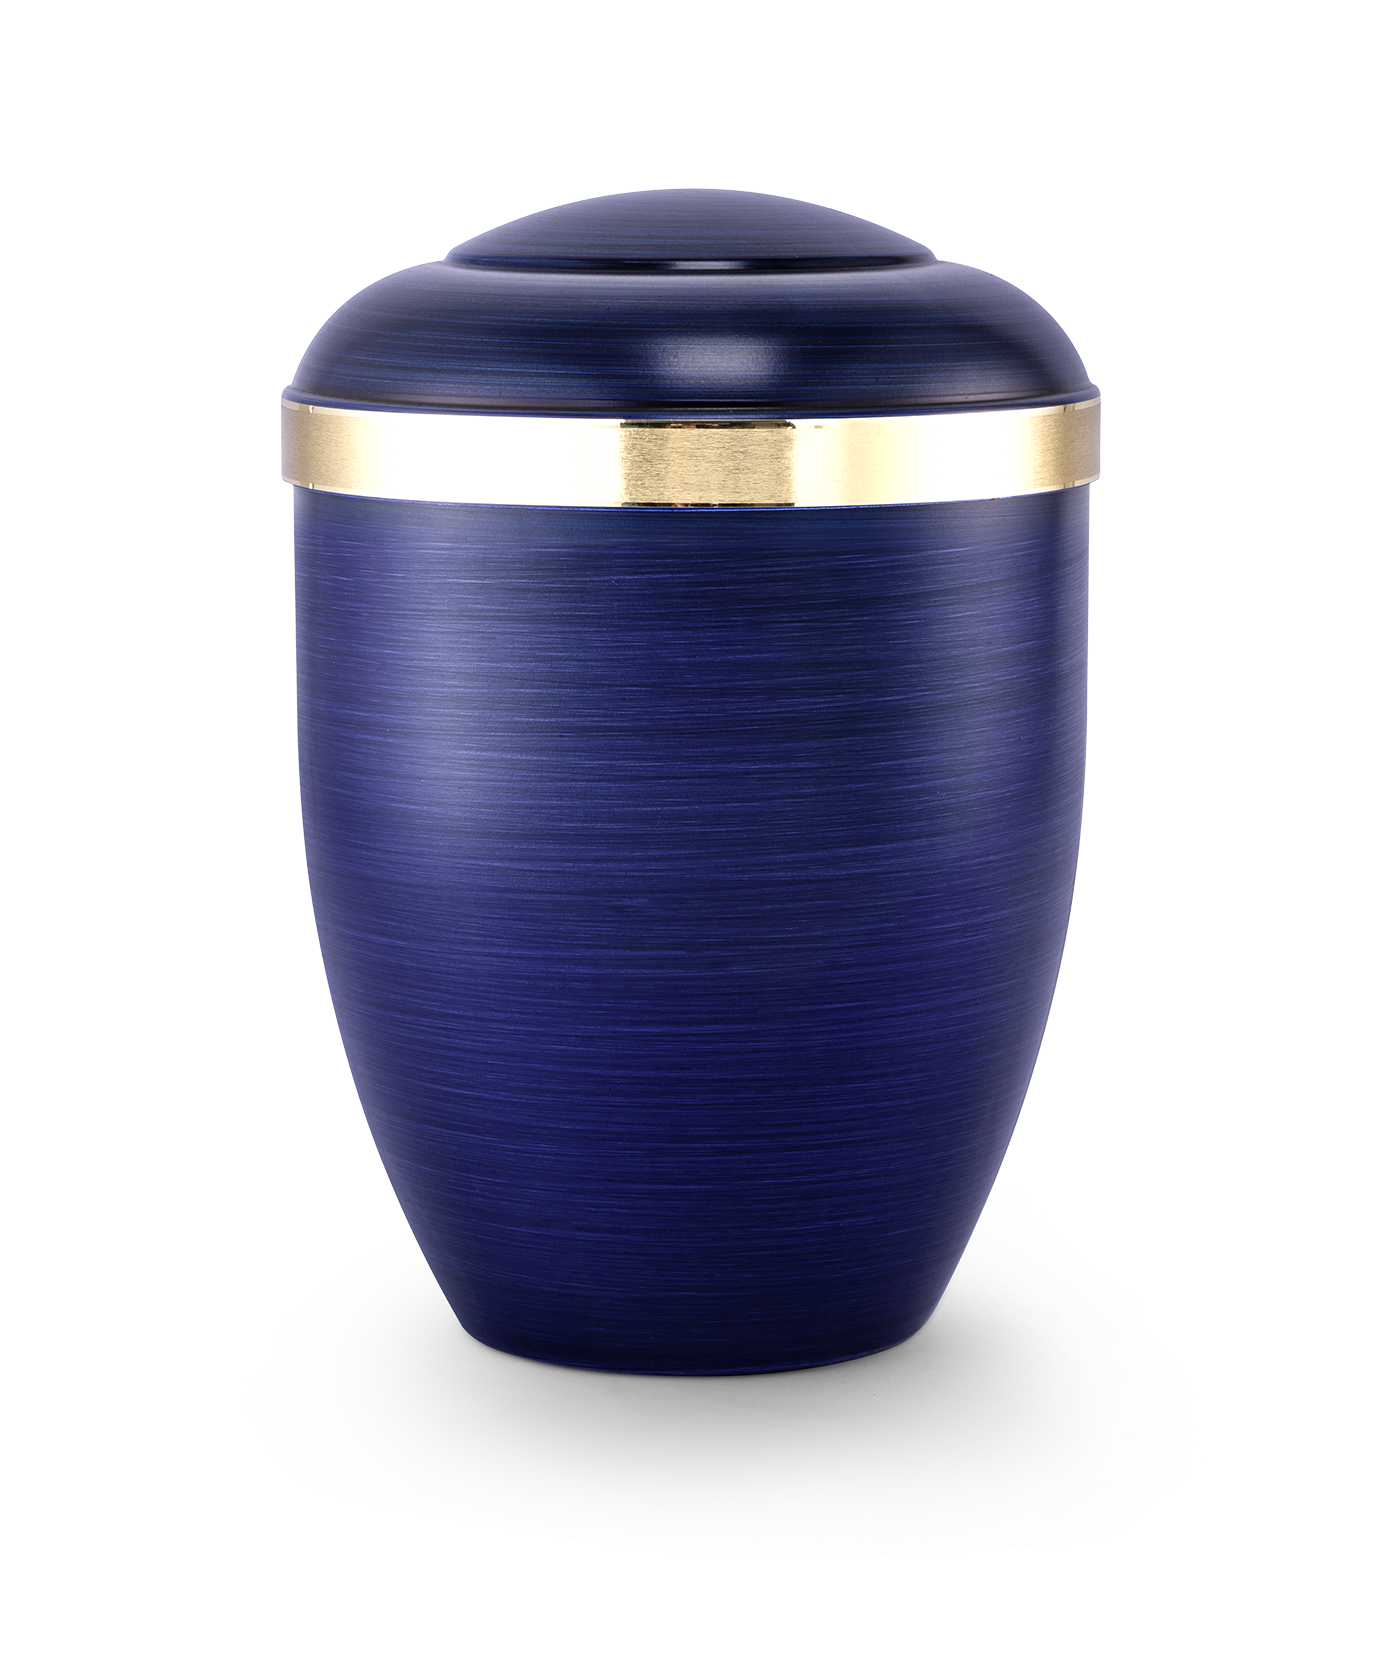 Kaufen blau Völsing Urne Premium Edition Tosca